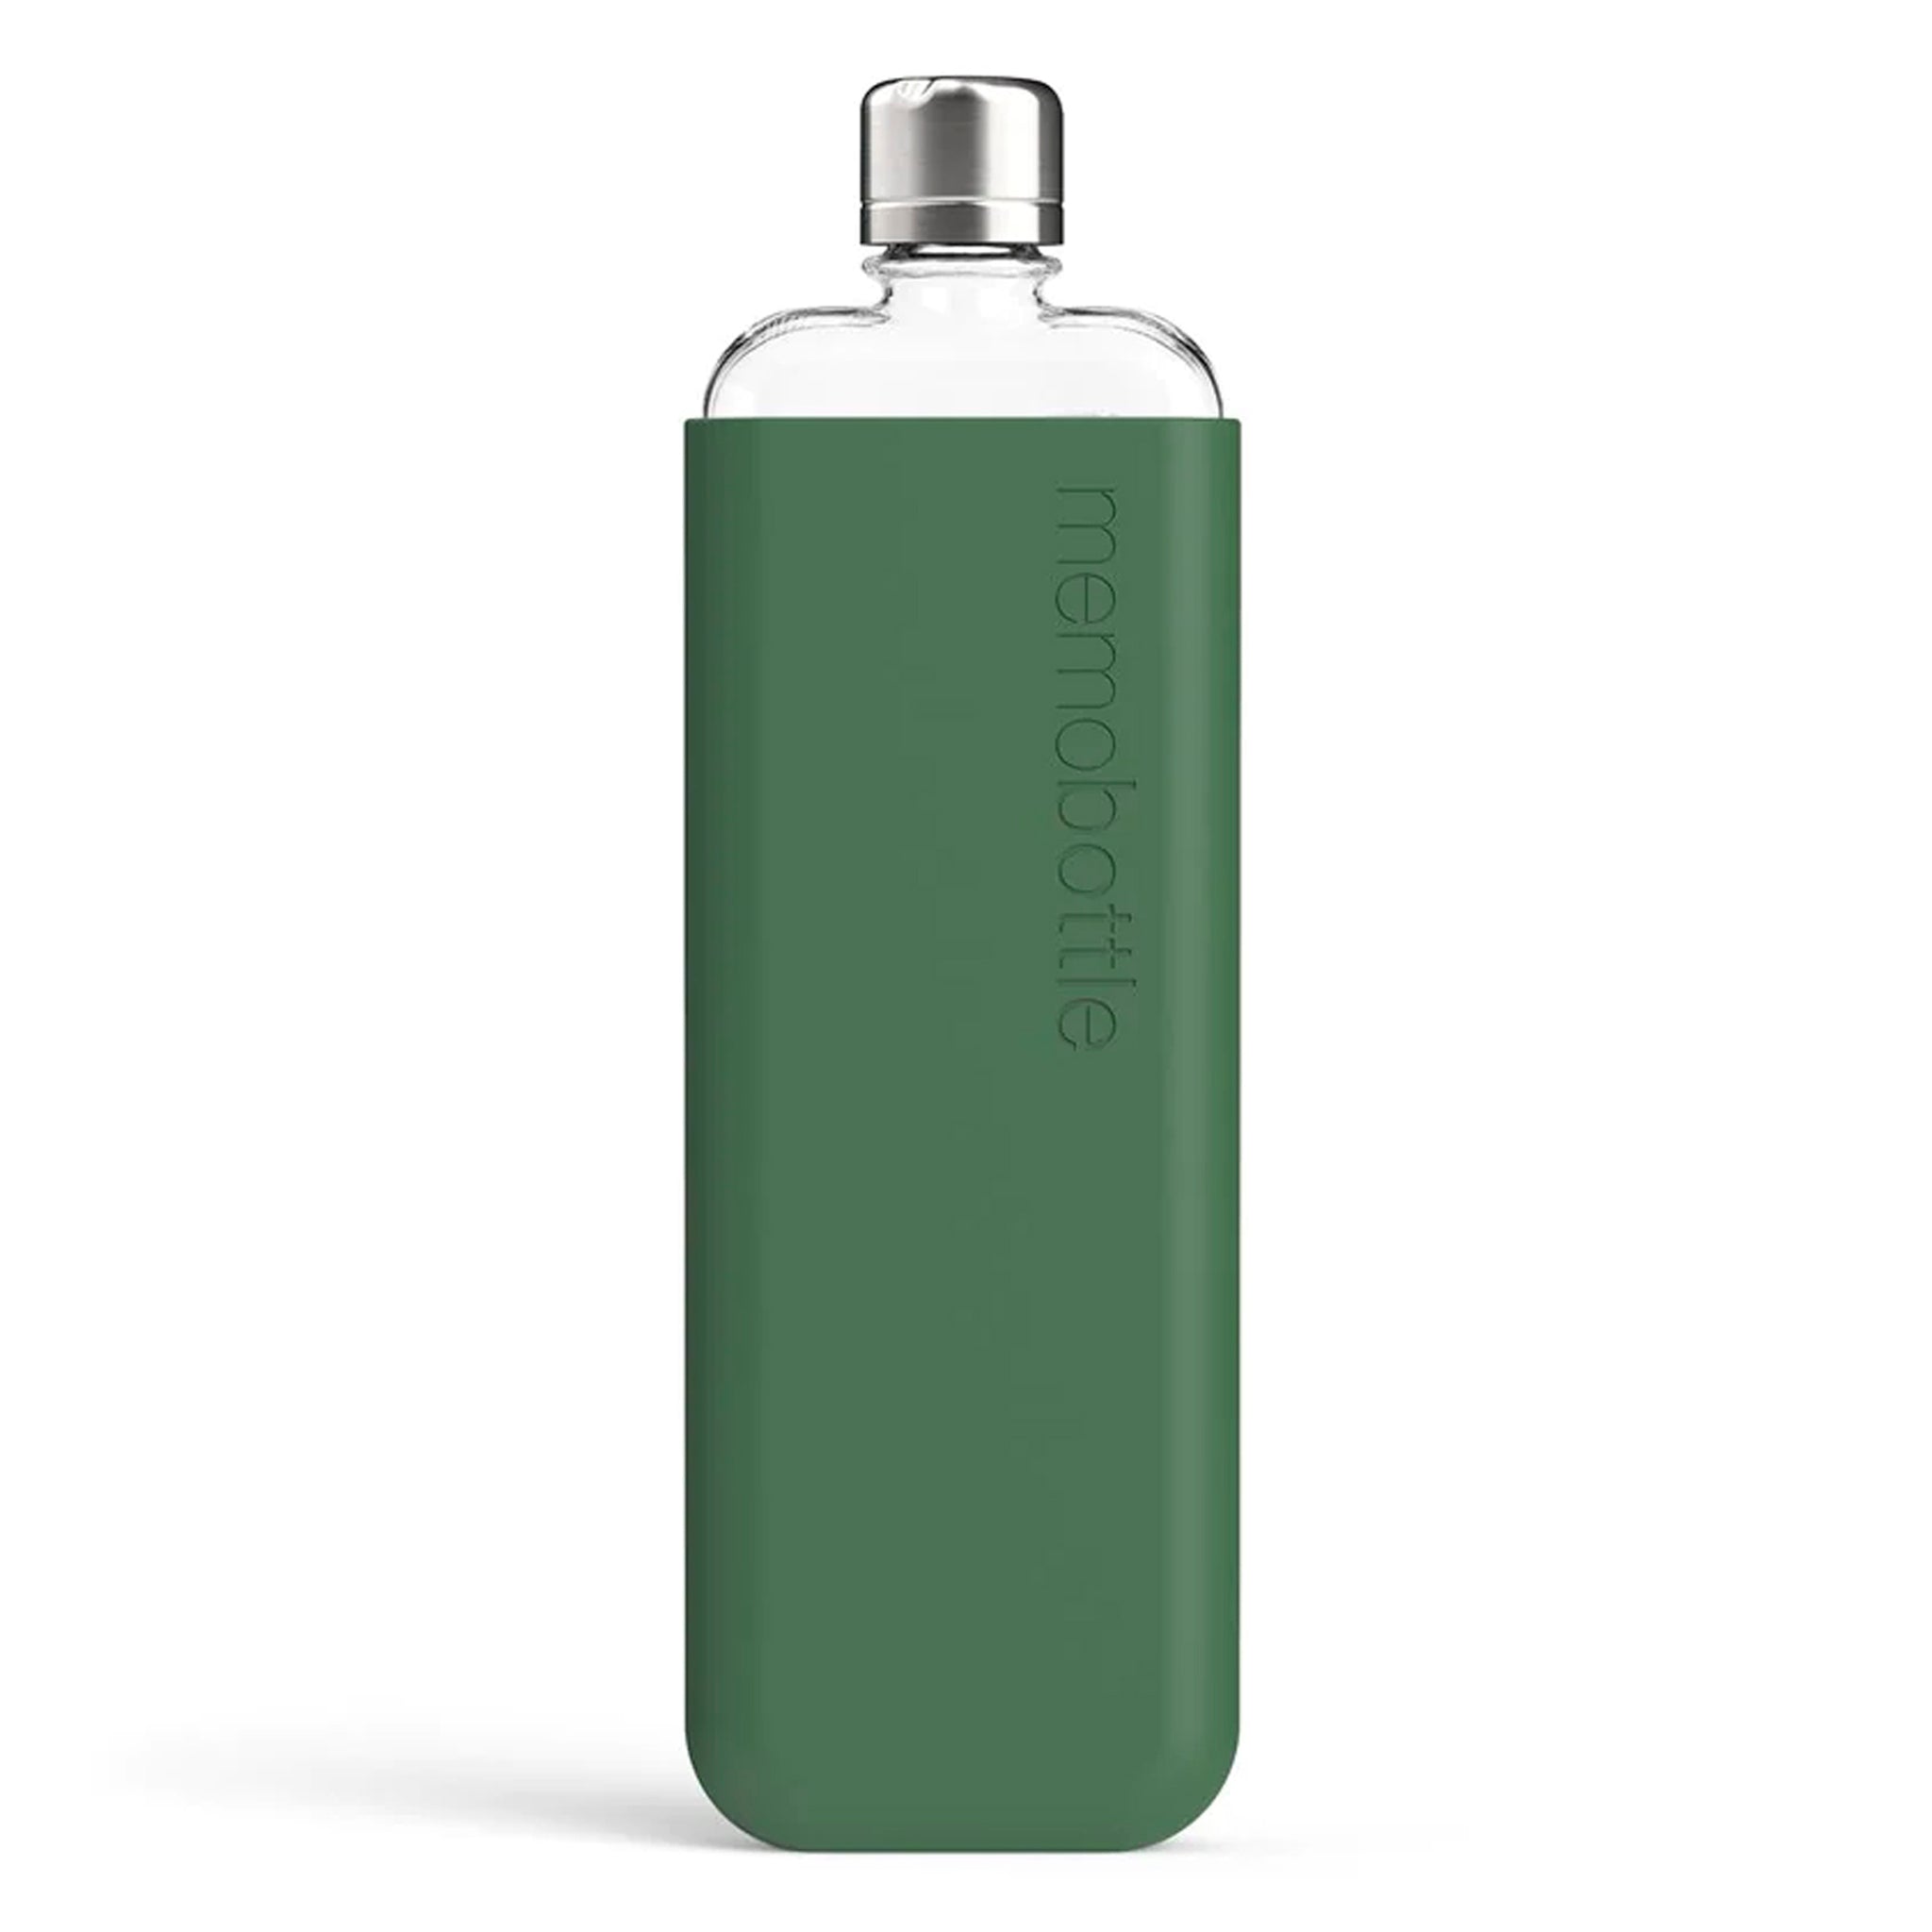 Memobottle Silicone Sleeve Slim Moss Green│Drinkfles│foto voorkant met fles